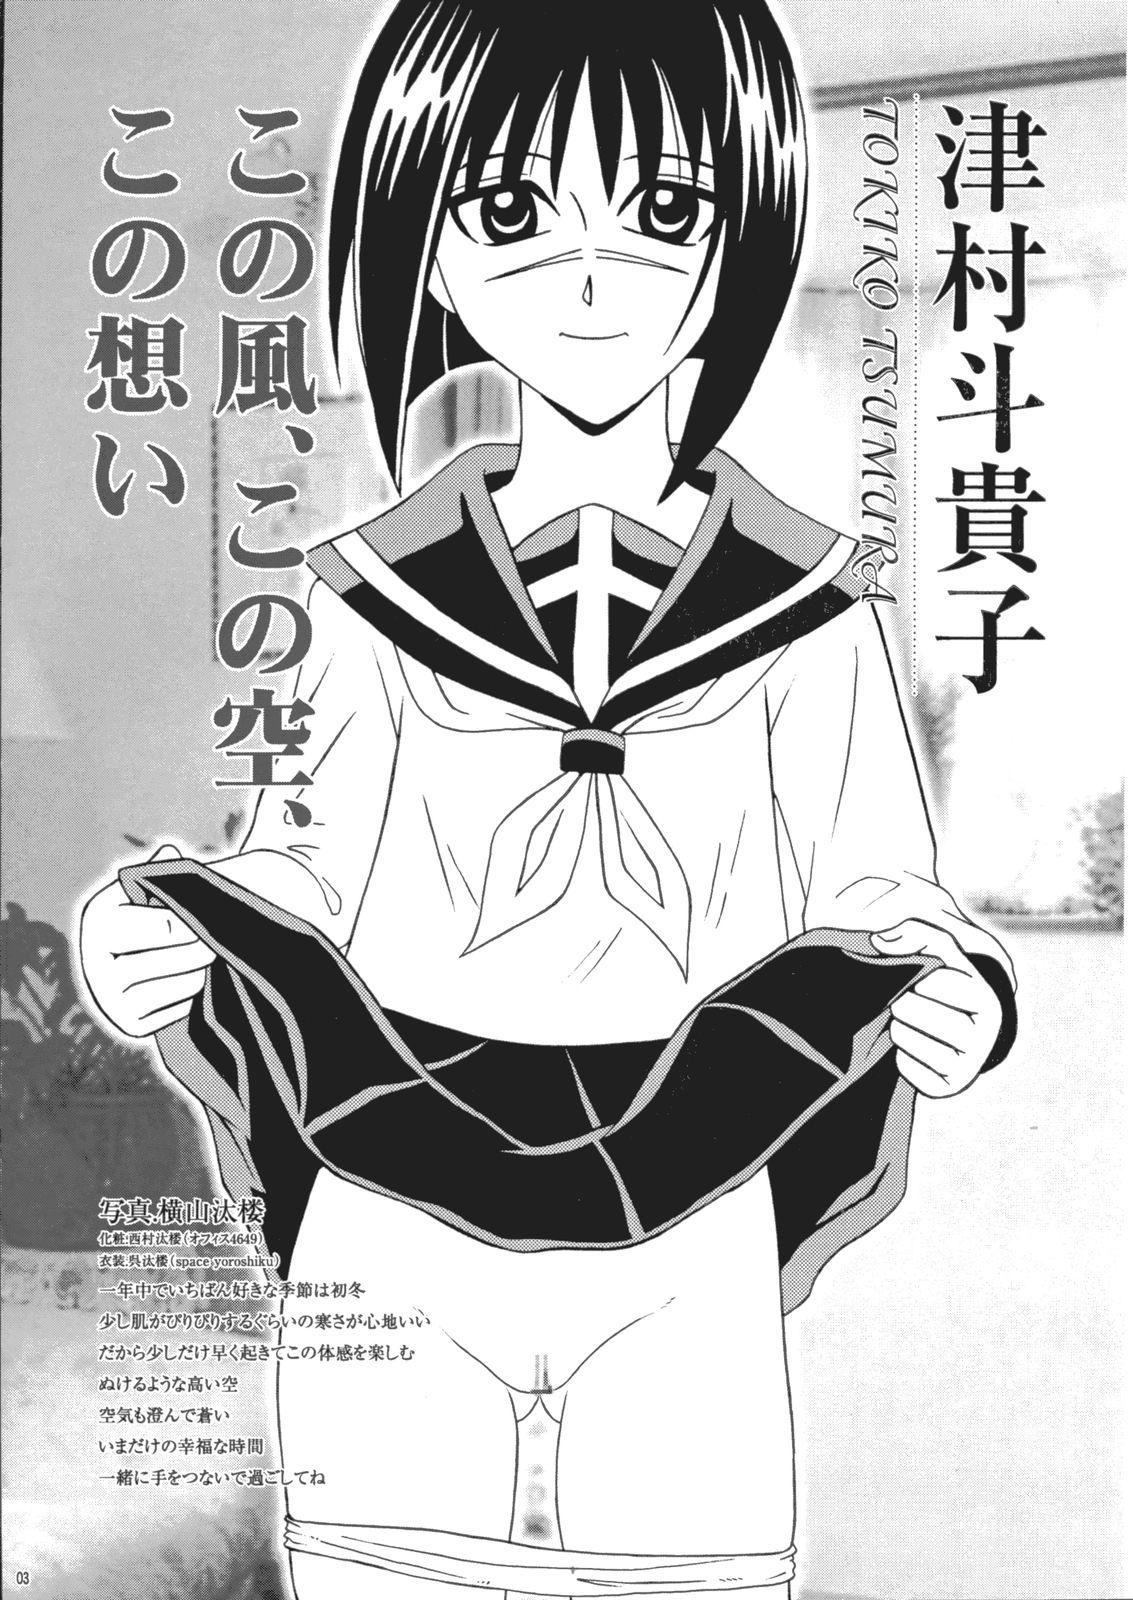 Milf Saku-chan Kurabu Vol.03 - Naruto One piece Ichigo 100 Is Hikaru no go Dick Sucking Porn - Page 2